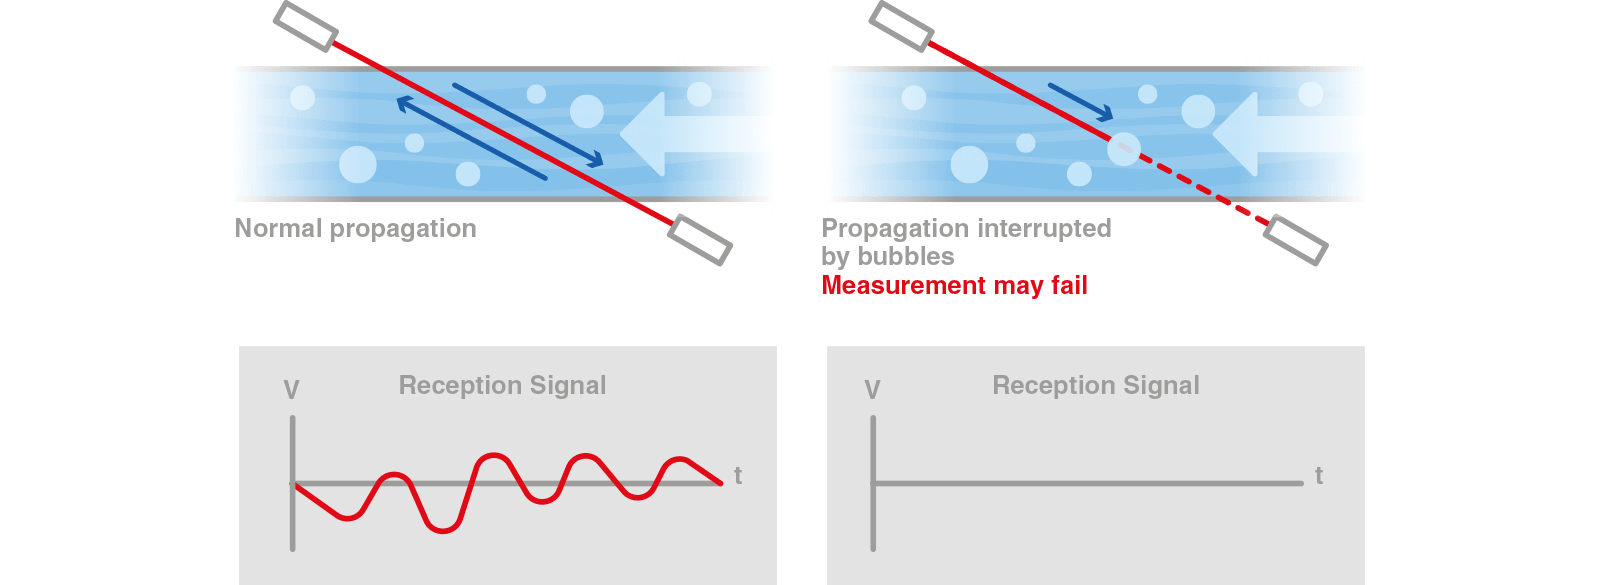 die fortschrittliche Technologie der digitalen Signalverarbeitung schema